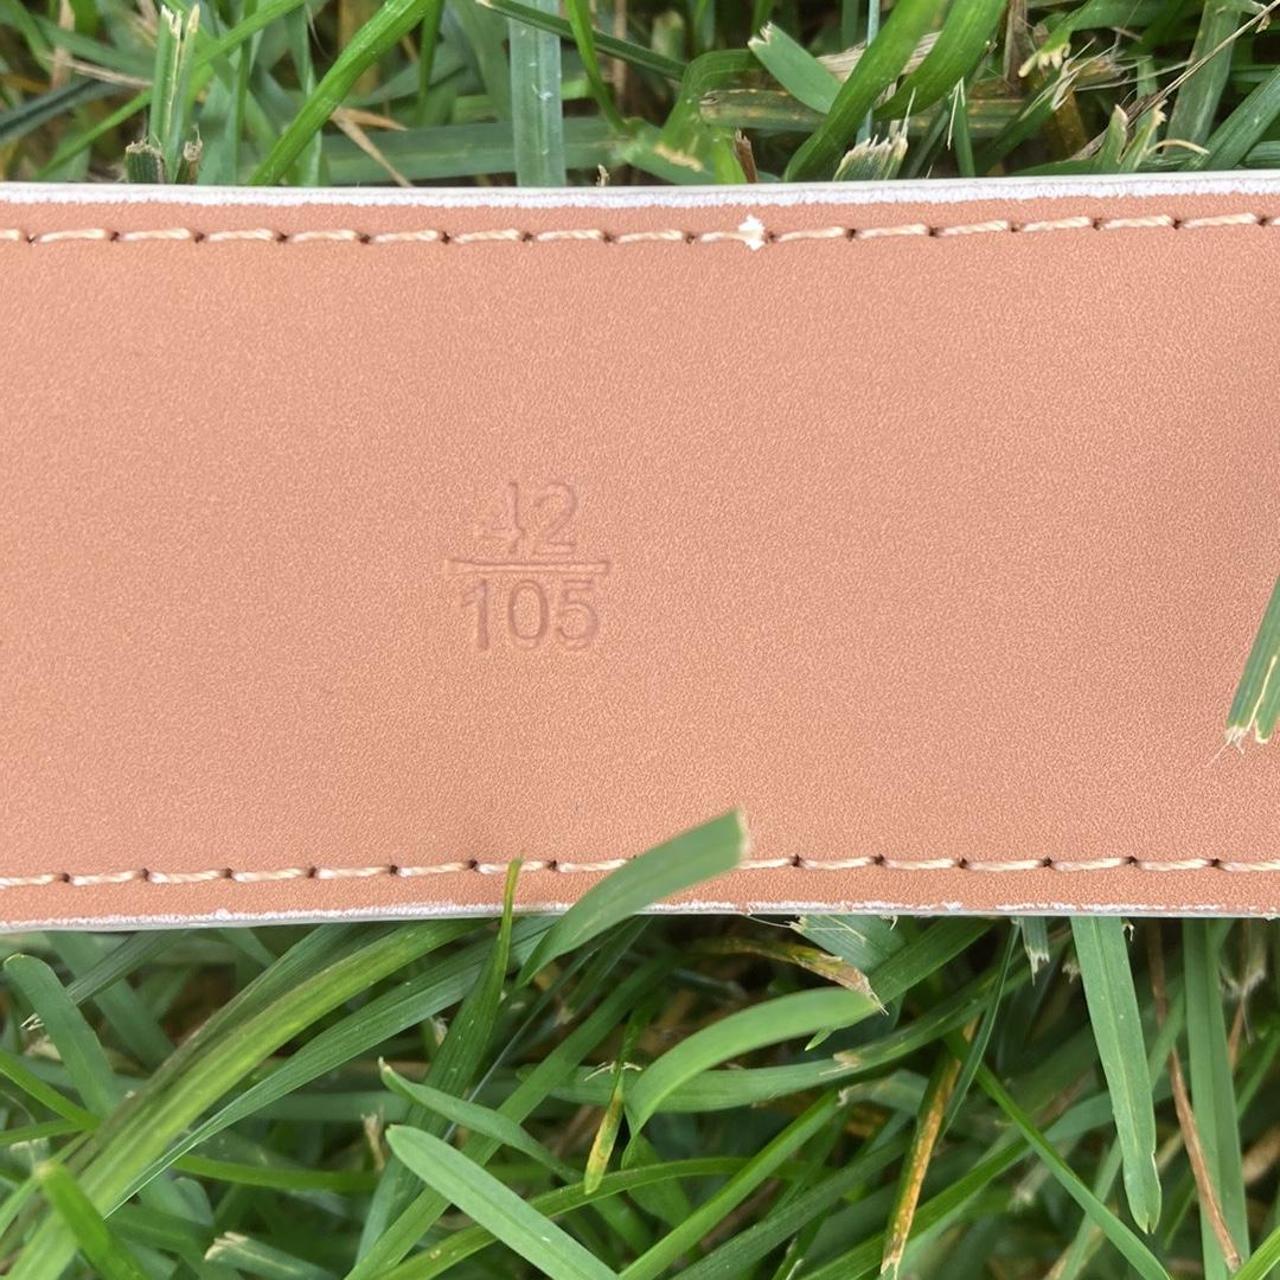 Brand New LV Belt Size 100/40 Stamp: M0320 Comes - Depop